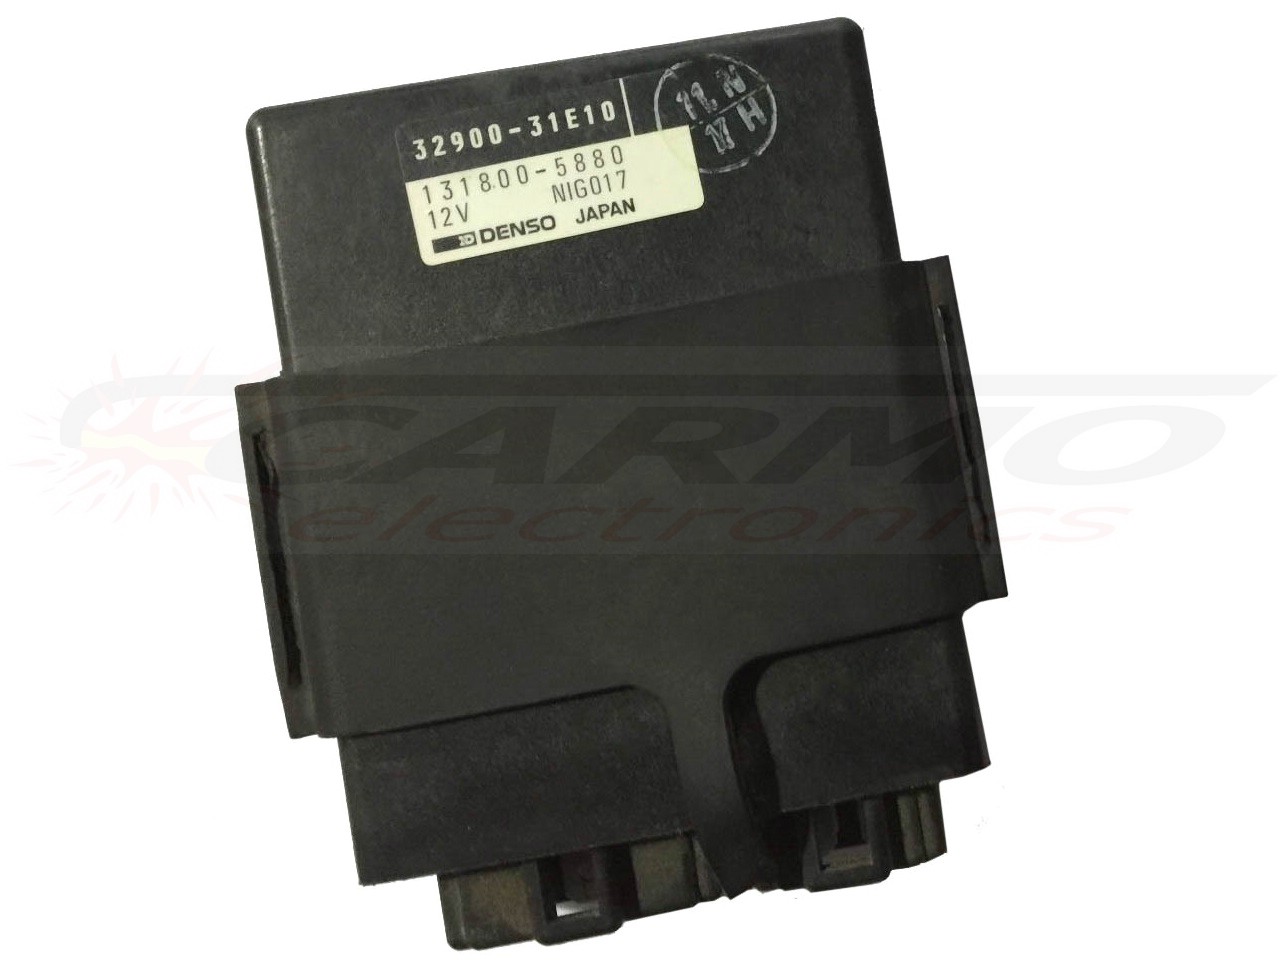 RF900 RF900R TCI CDI dispositif de commande boîte noire (32900-31E00, -31E10, -31E20, -31E30)